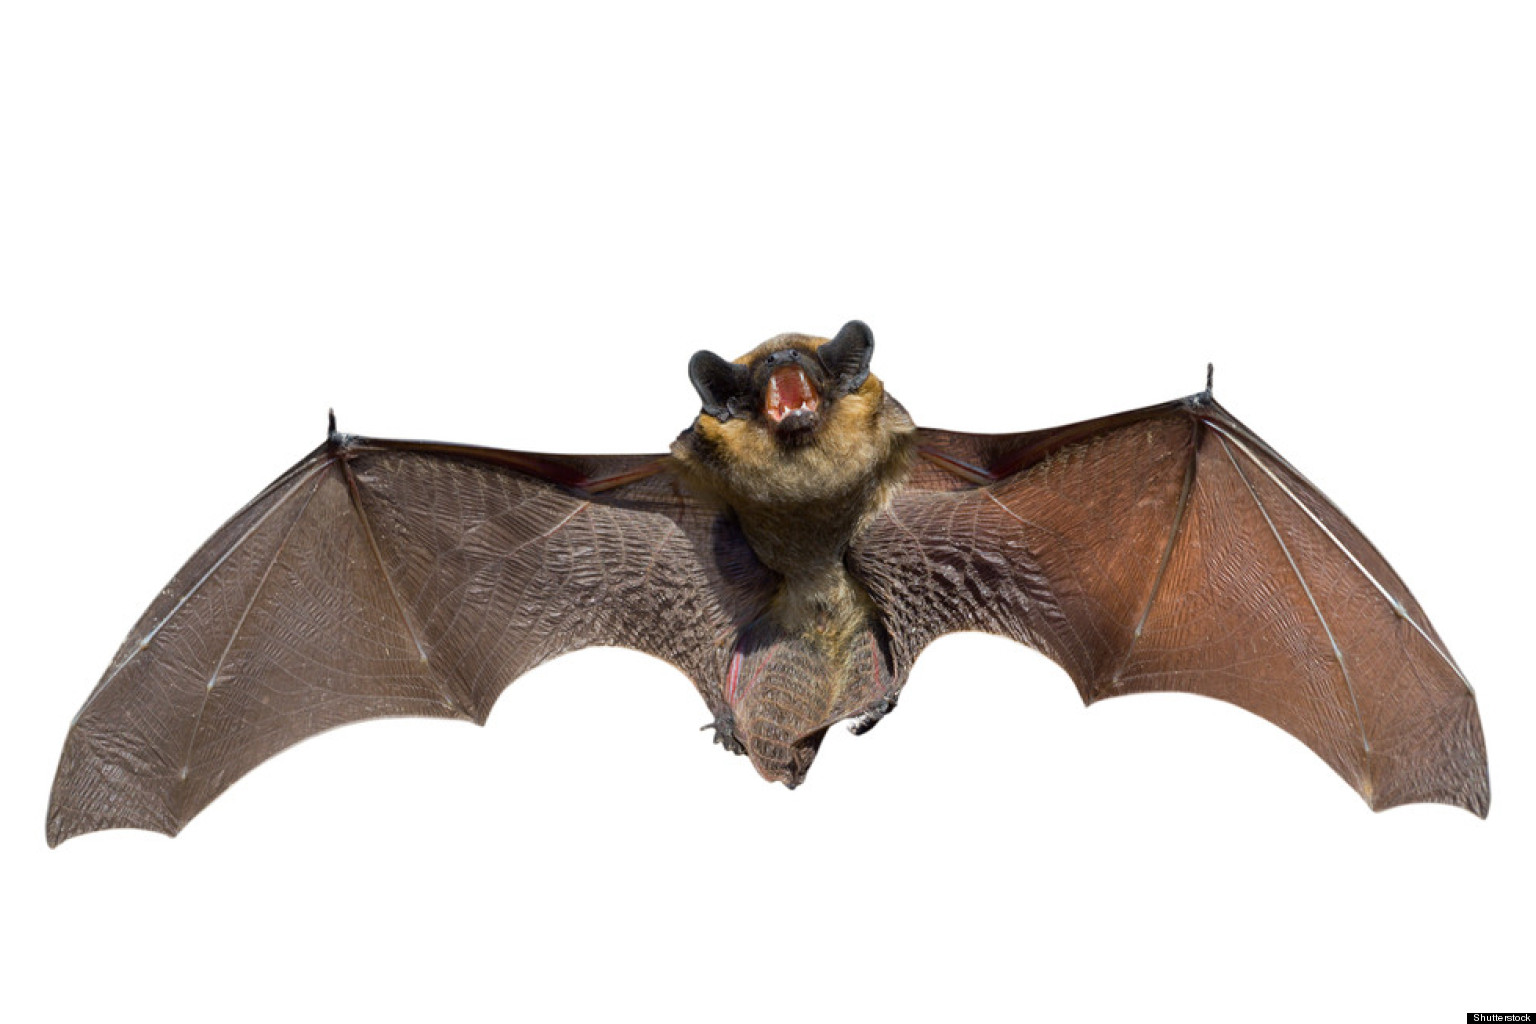 New Coronavirus-Like Virus Found In Bats